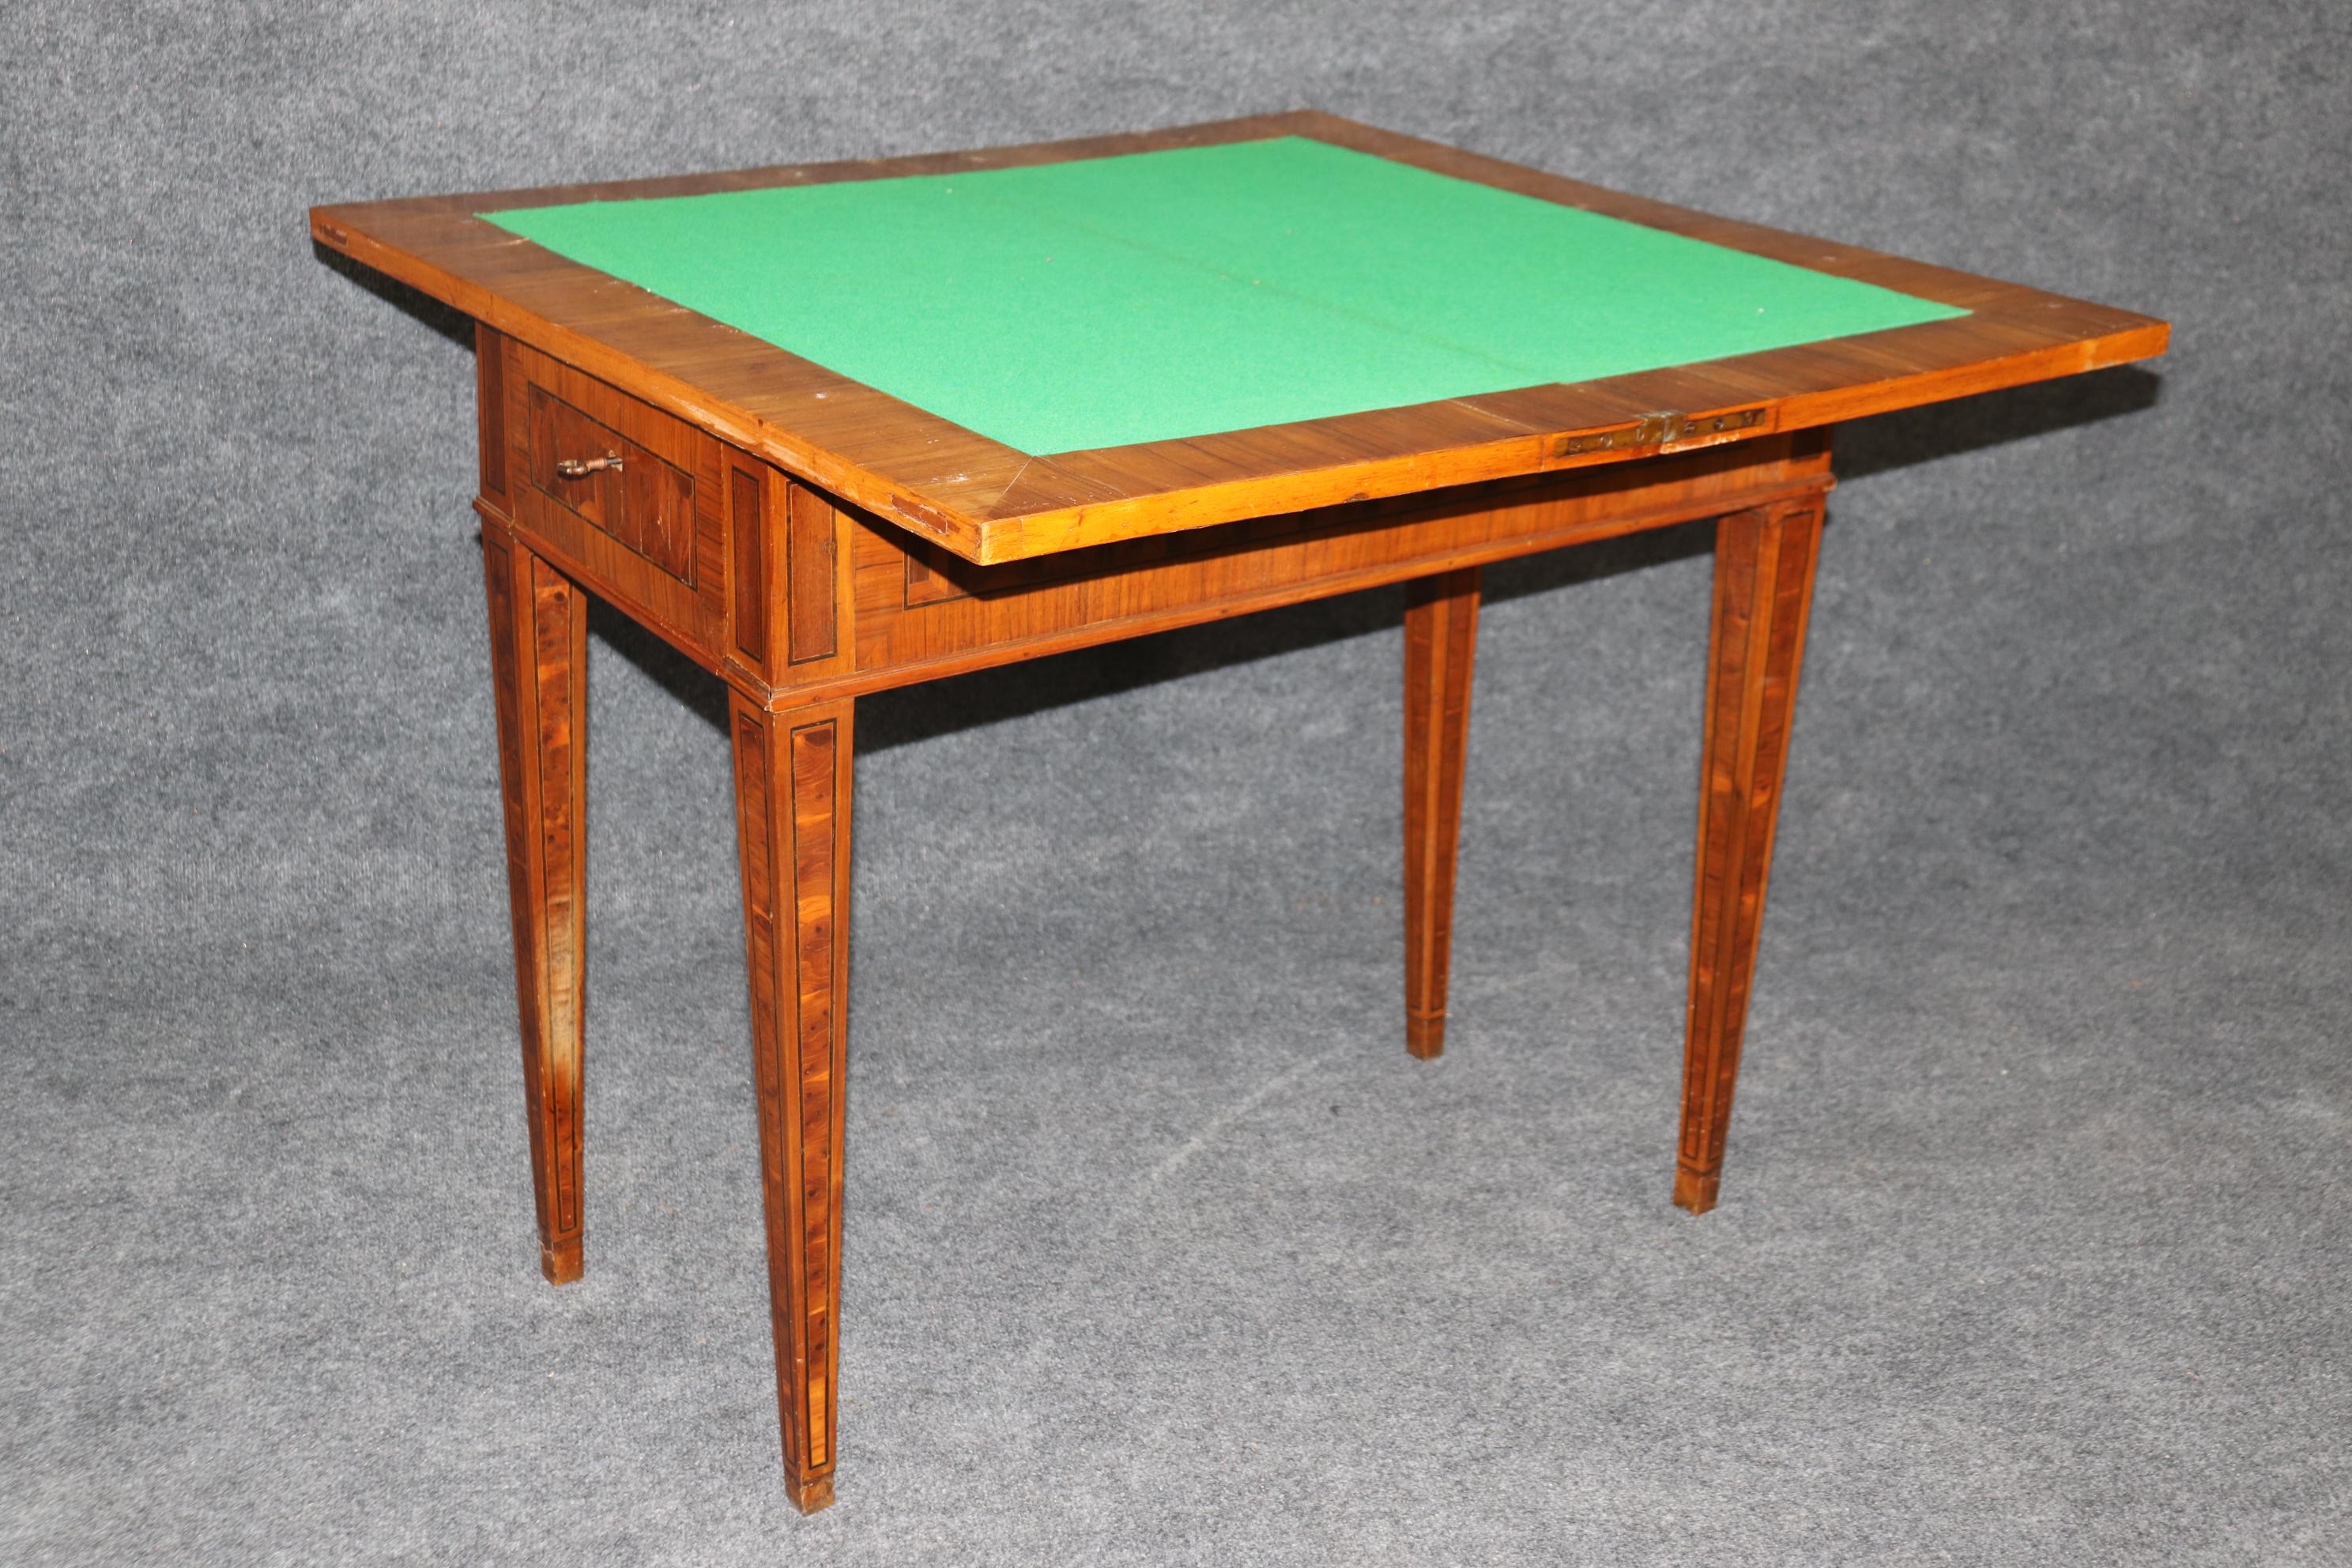 Dies ist eine seltene und einzigartige optische Täuschung eingelegten Palisander und Olivewood Spieltisch mit neuen Filz. Der Tisch ist ein wahres Kunstwerk und hat absolut wunderbare Intarsien aus dunklem Palisander und hellem Olivenholz. Der Tisch